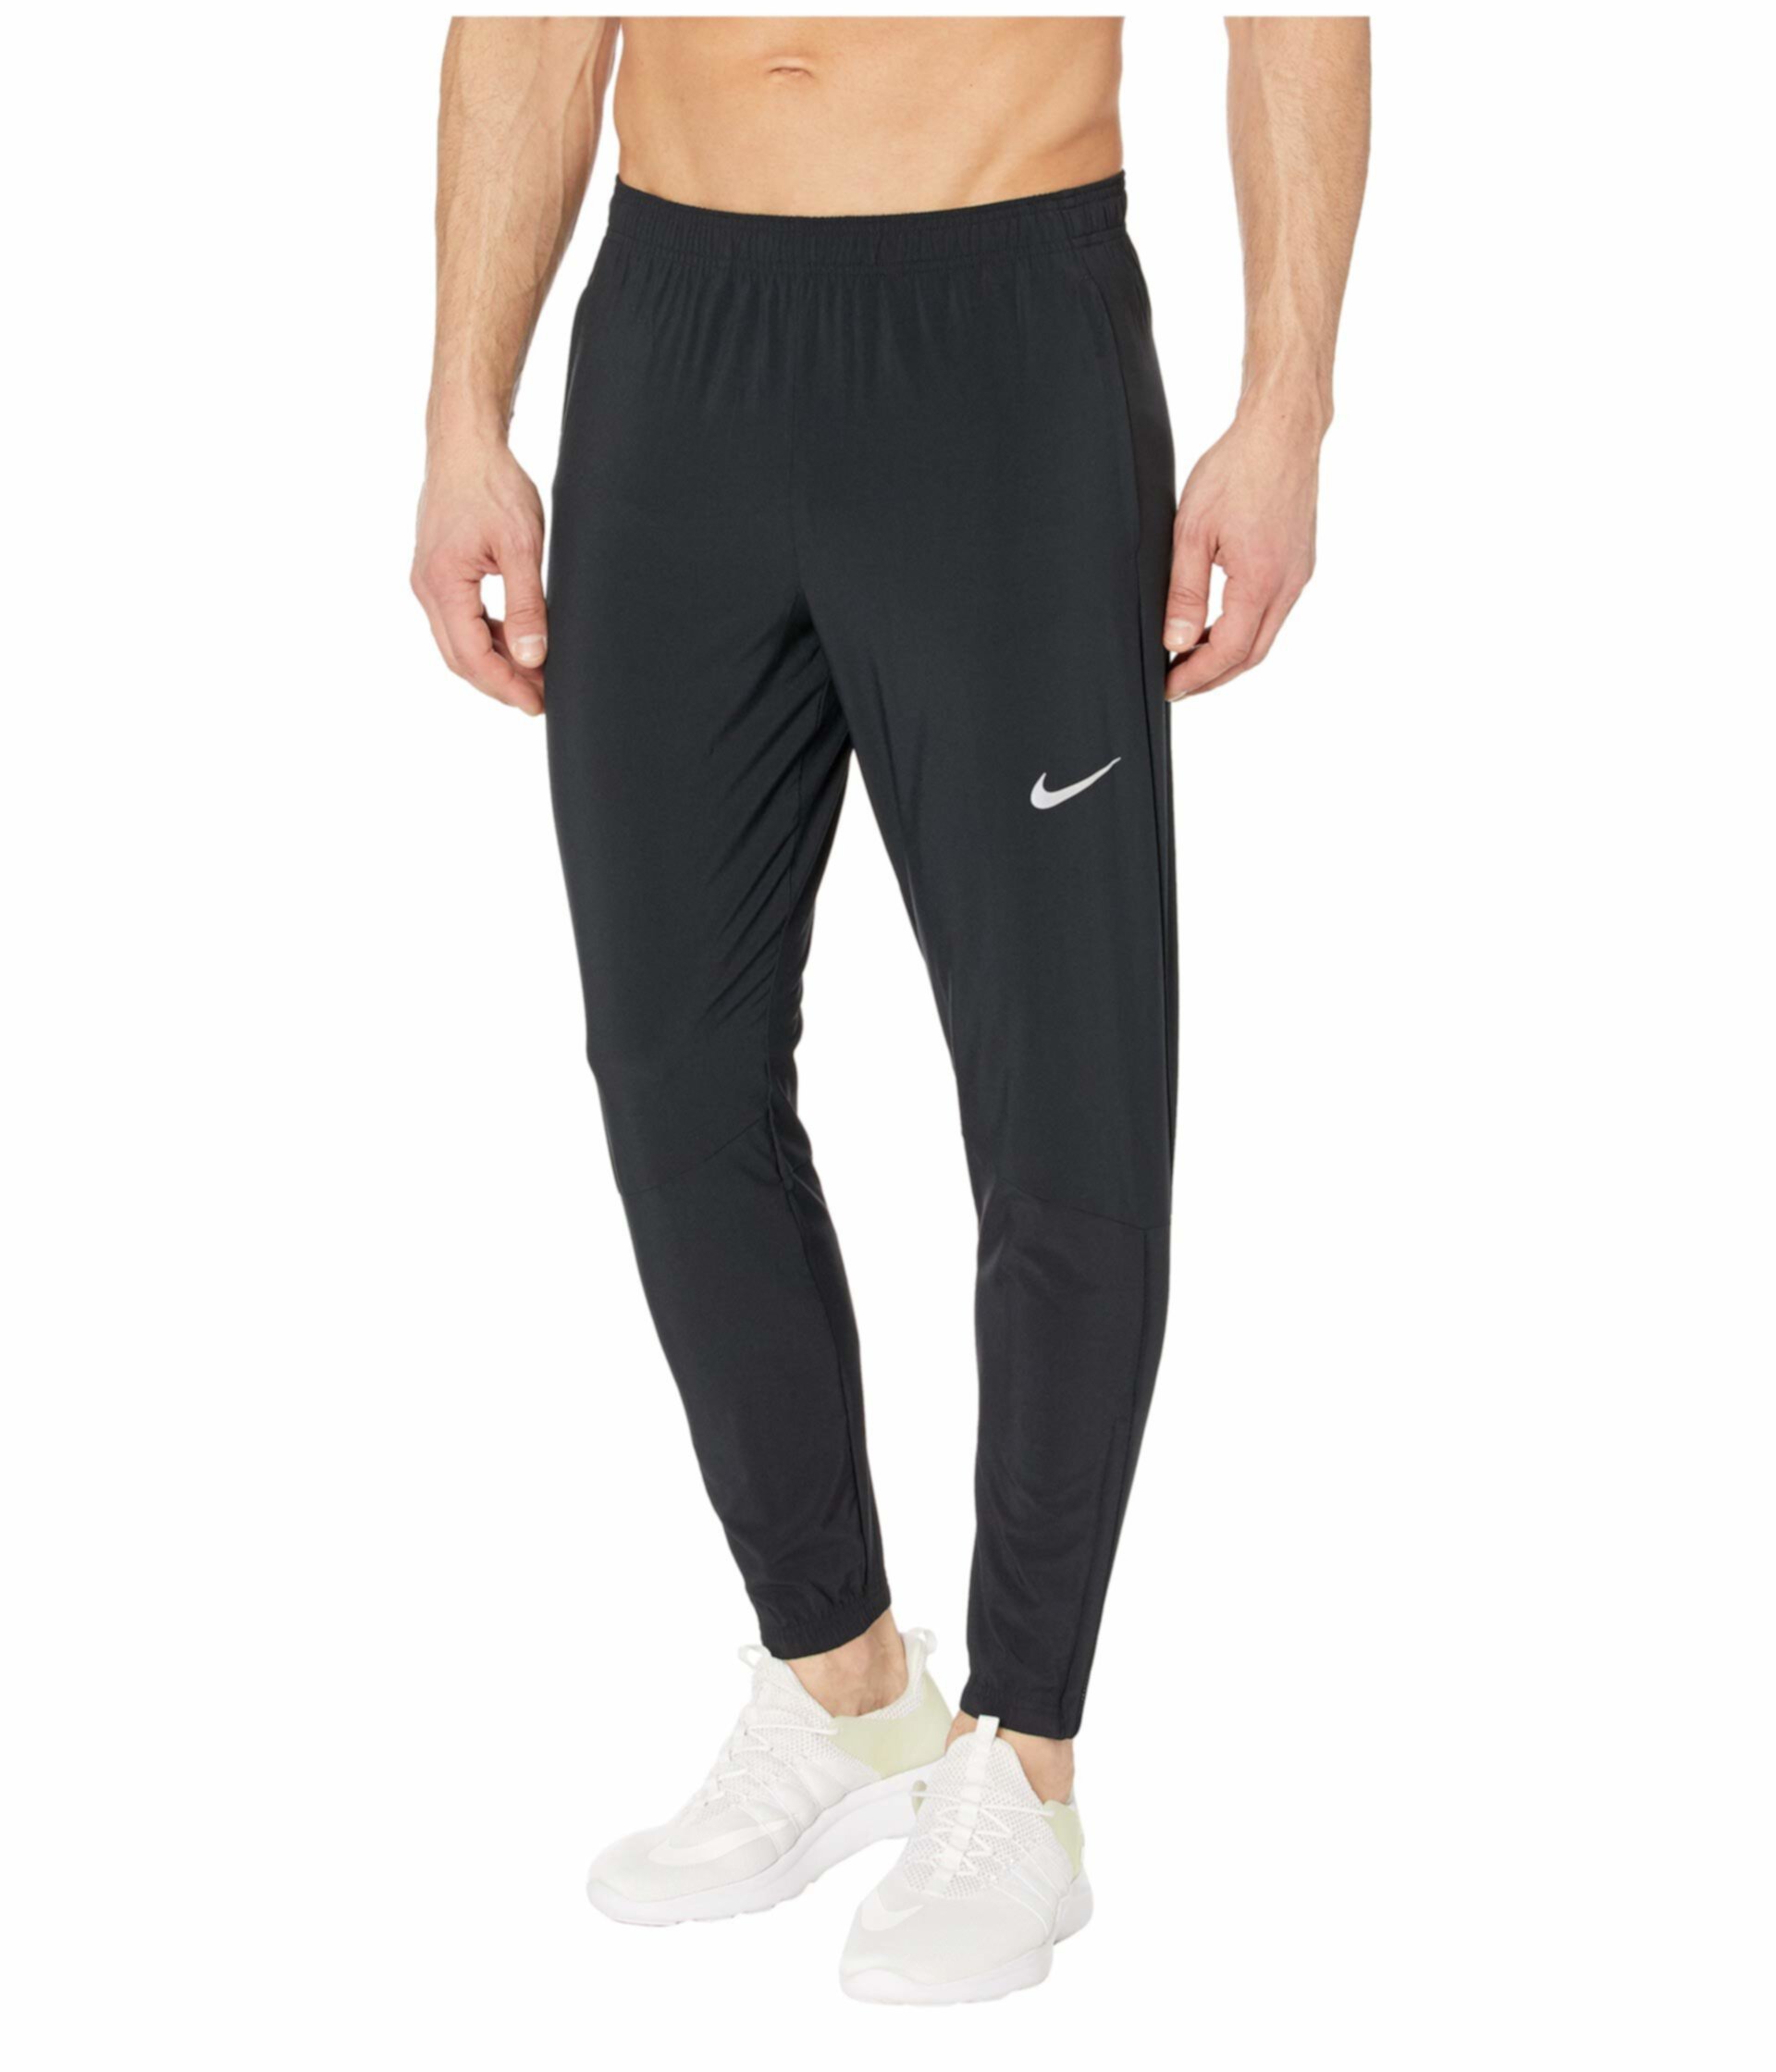 Призрачные незаменимые брюки Nike